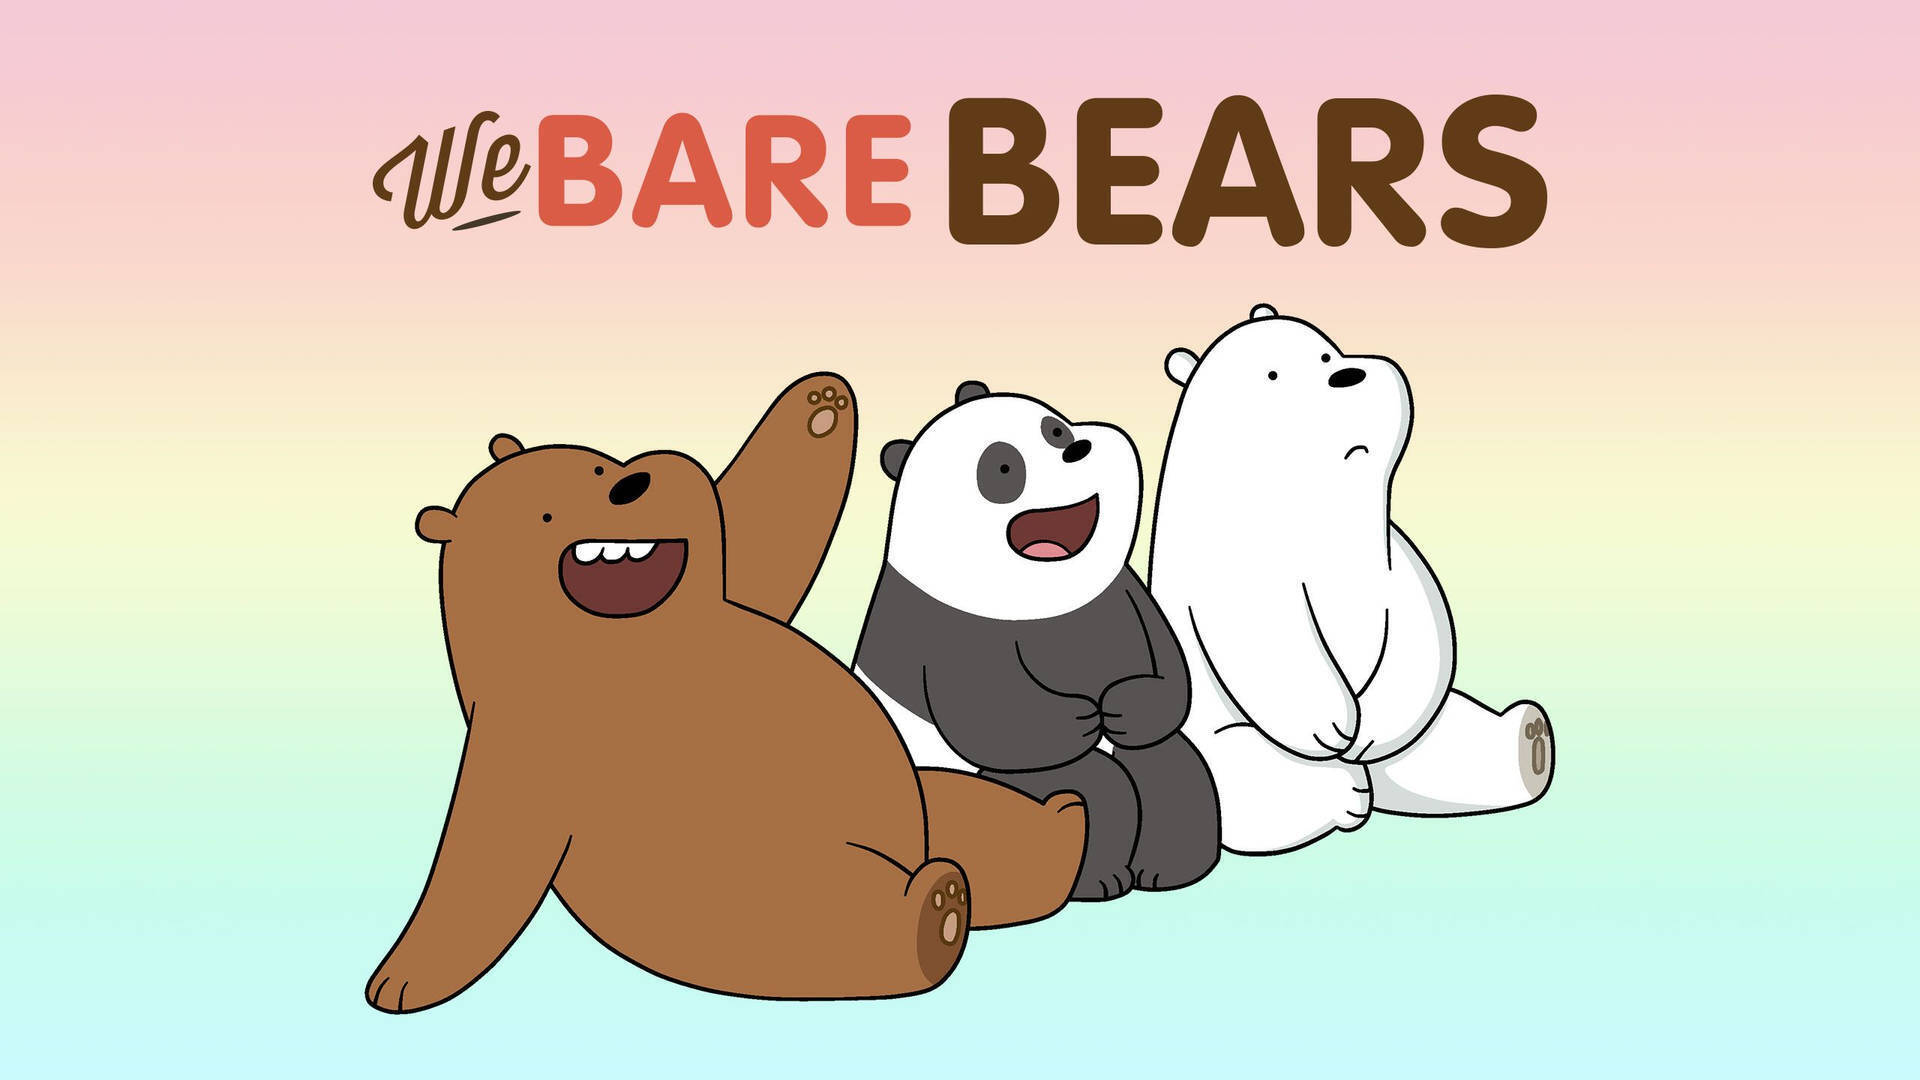 55 ảnh nền điện thoại cute dành cho fan của We Bare Bears  BlogAnChoi